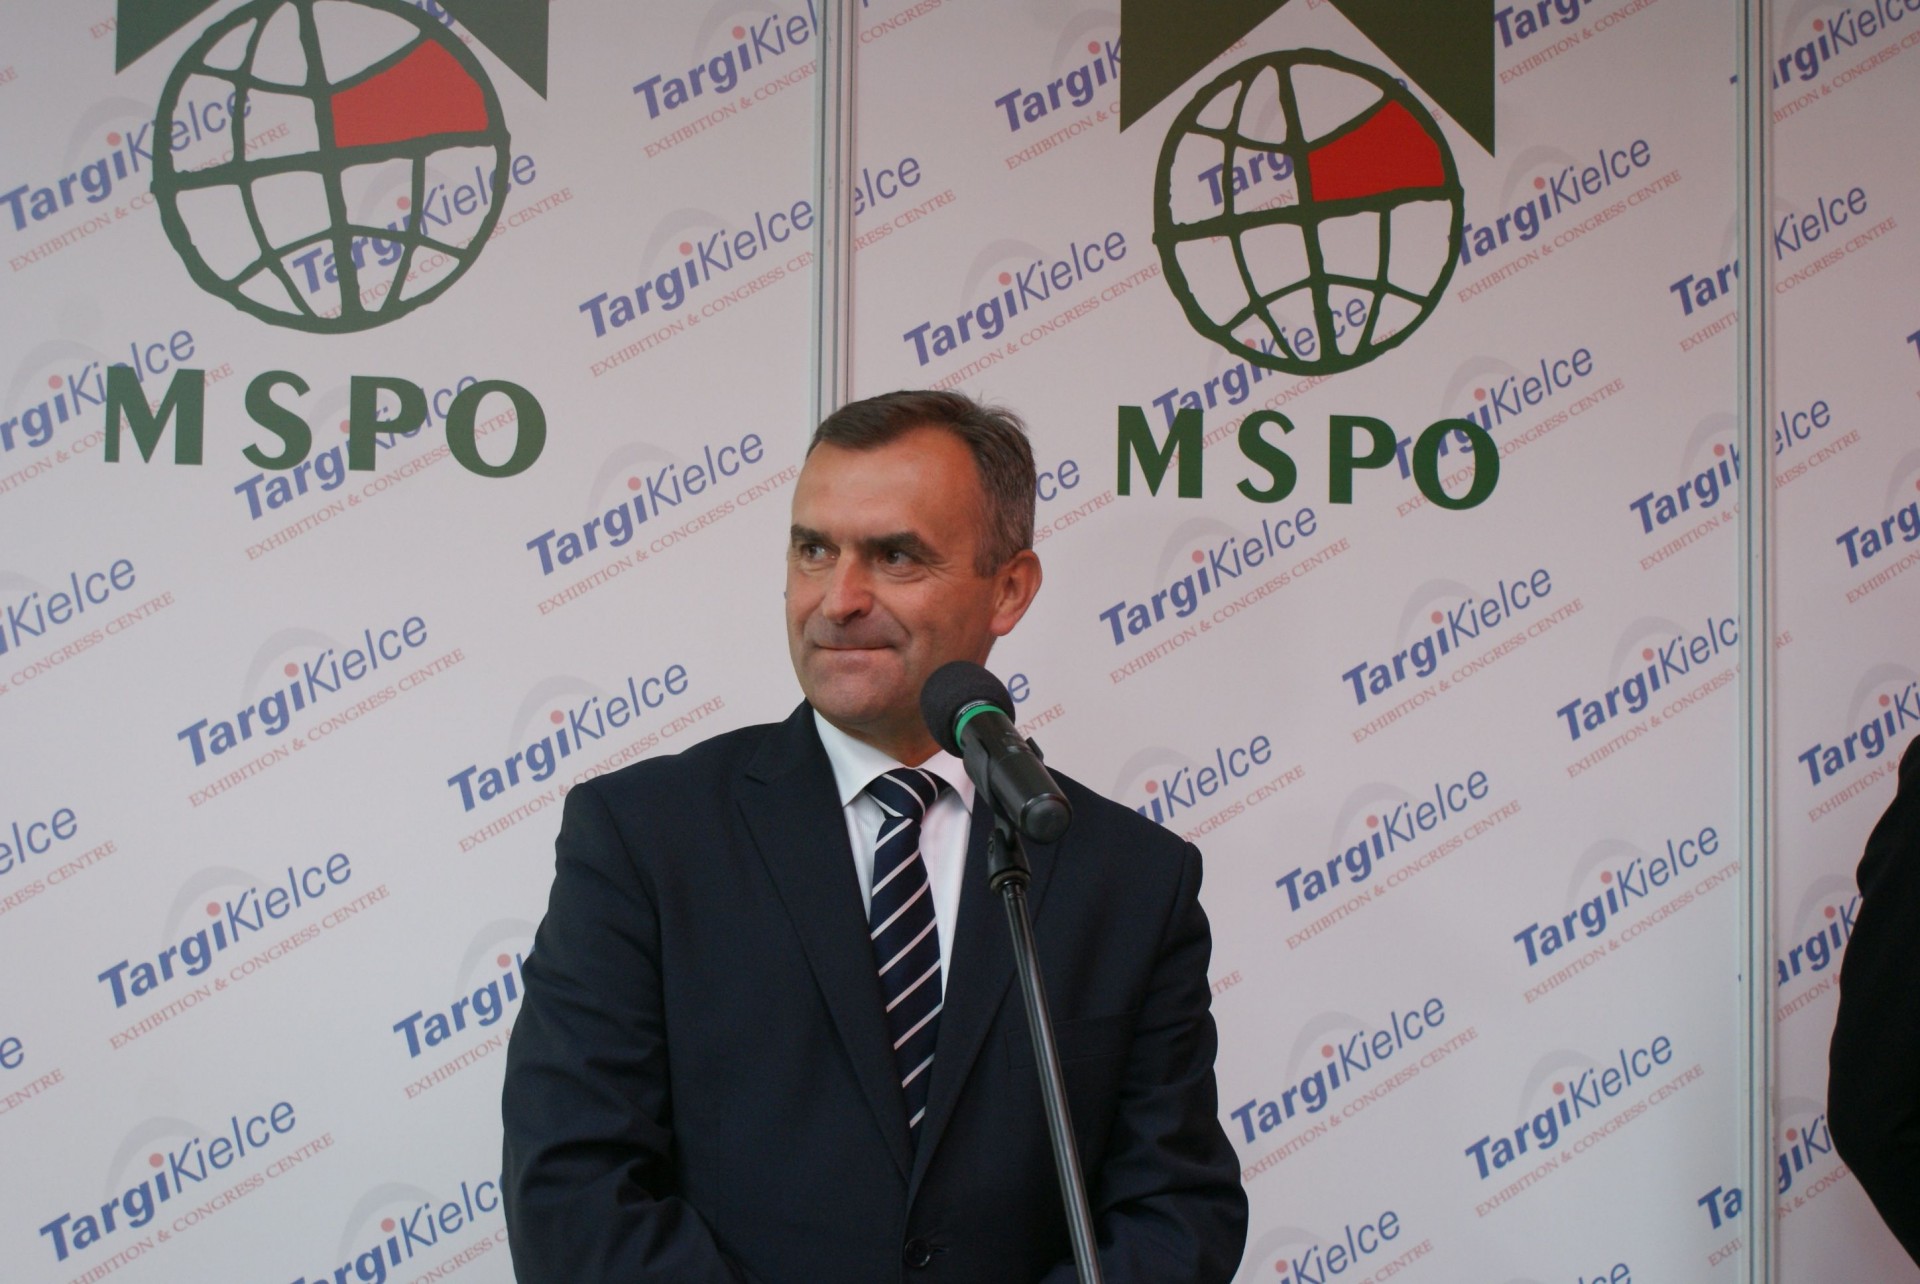 O wdrożeniu rządowego planu konsolidacji polskiego przemysłu obronnego minister Karpiński poinformował podczas MSPO w Kielcach. Fot. P. Maciążek/D24